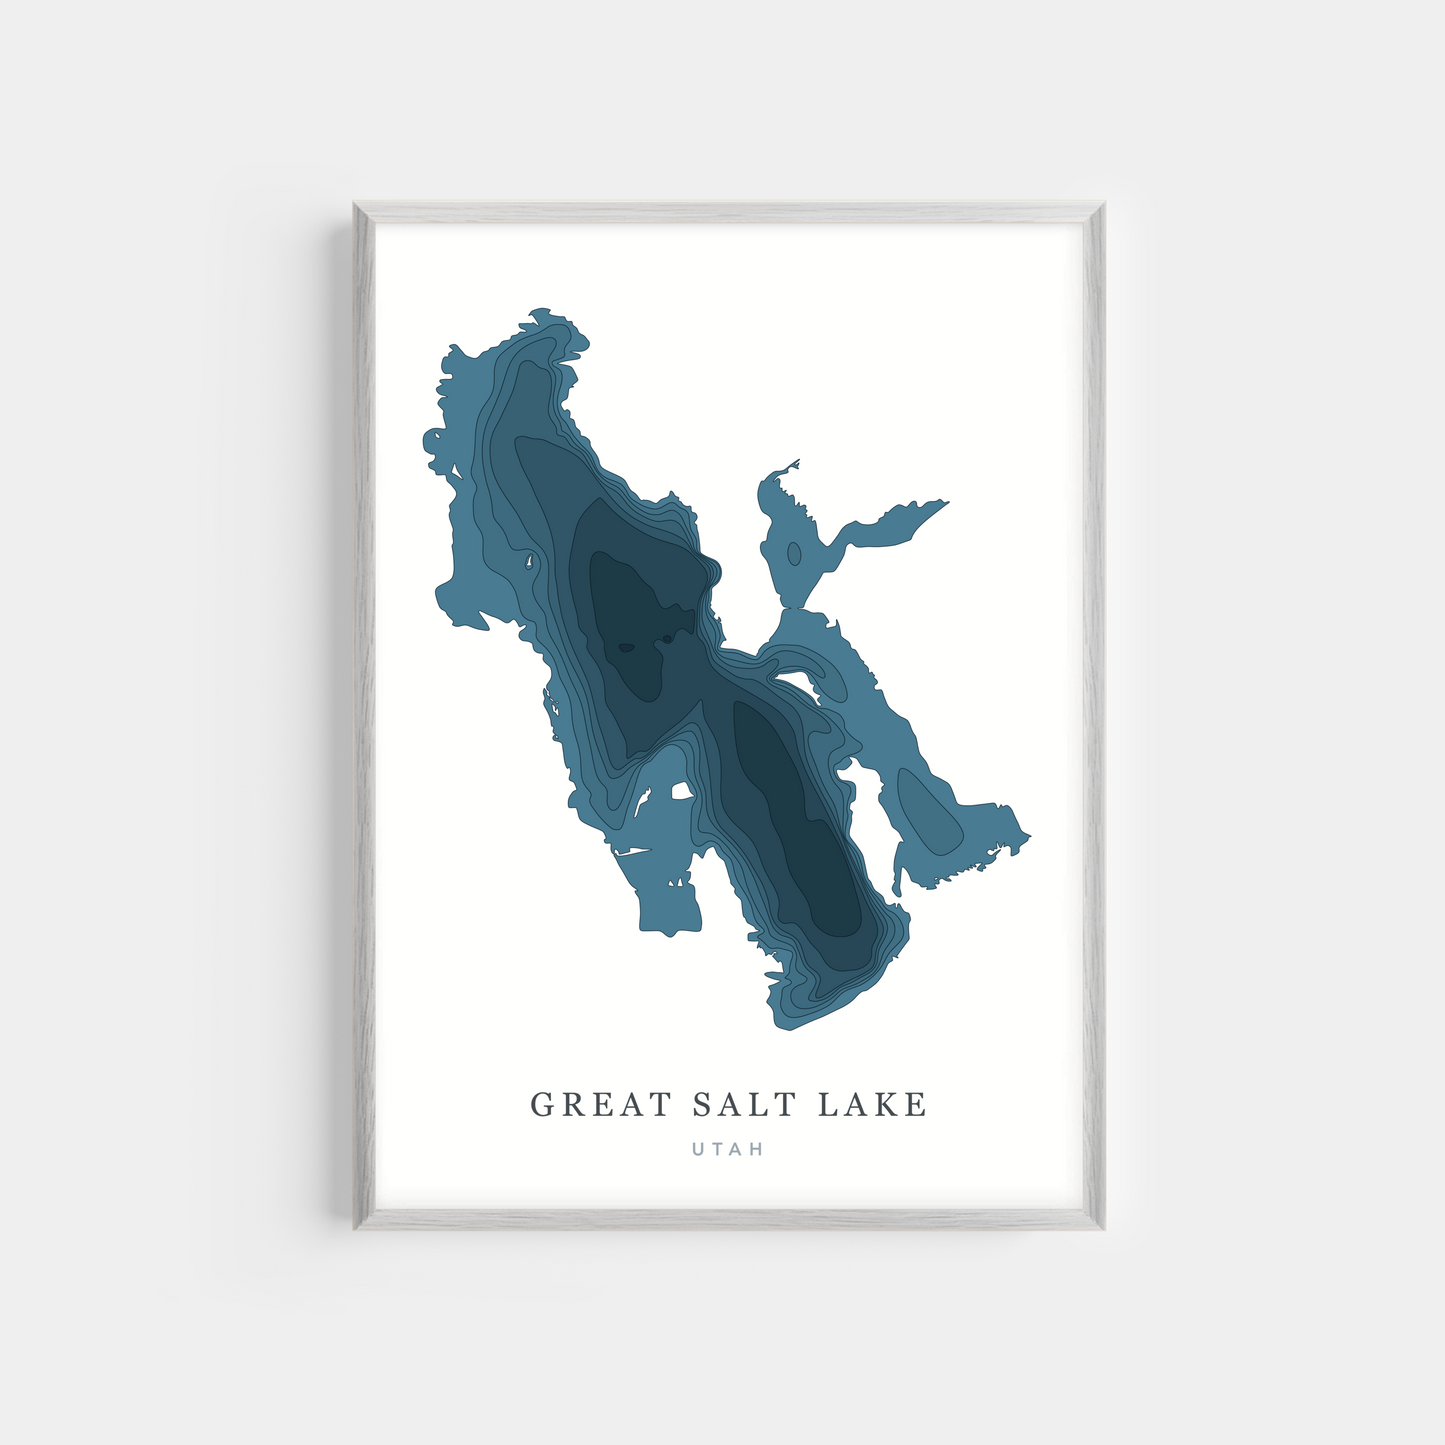 Great Salt Lake, Utah | Photo Print